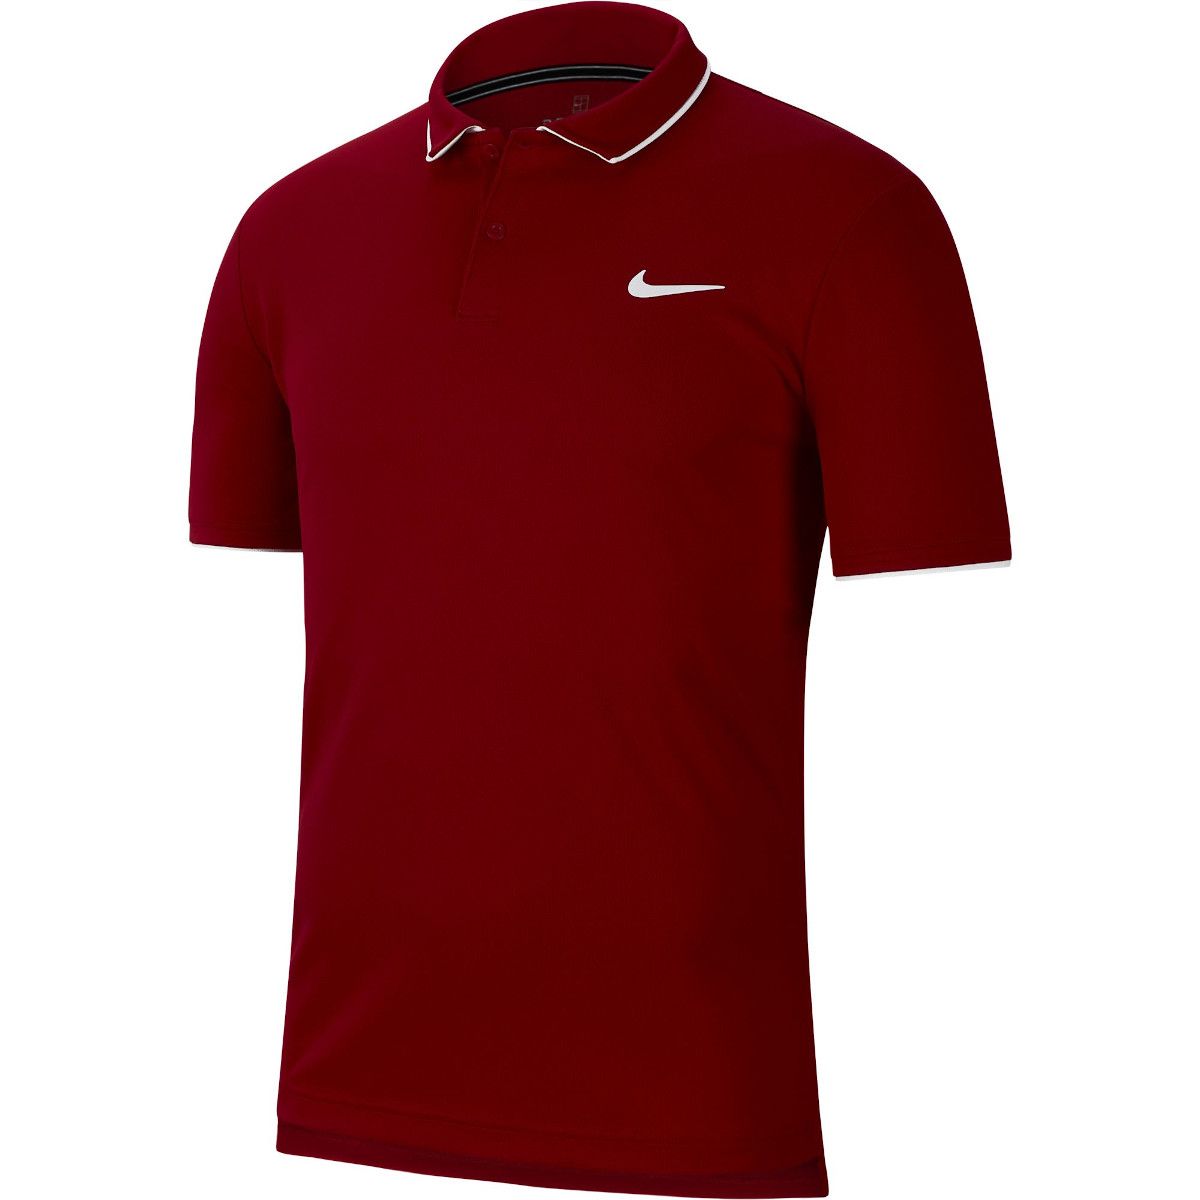 NikeCourt Dry Men's Tennis Polo 939137-687